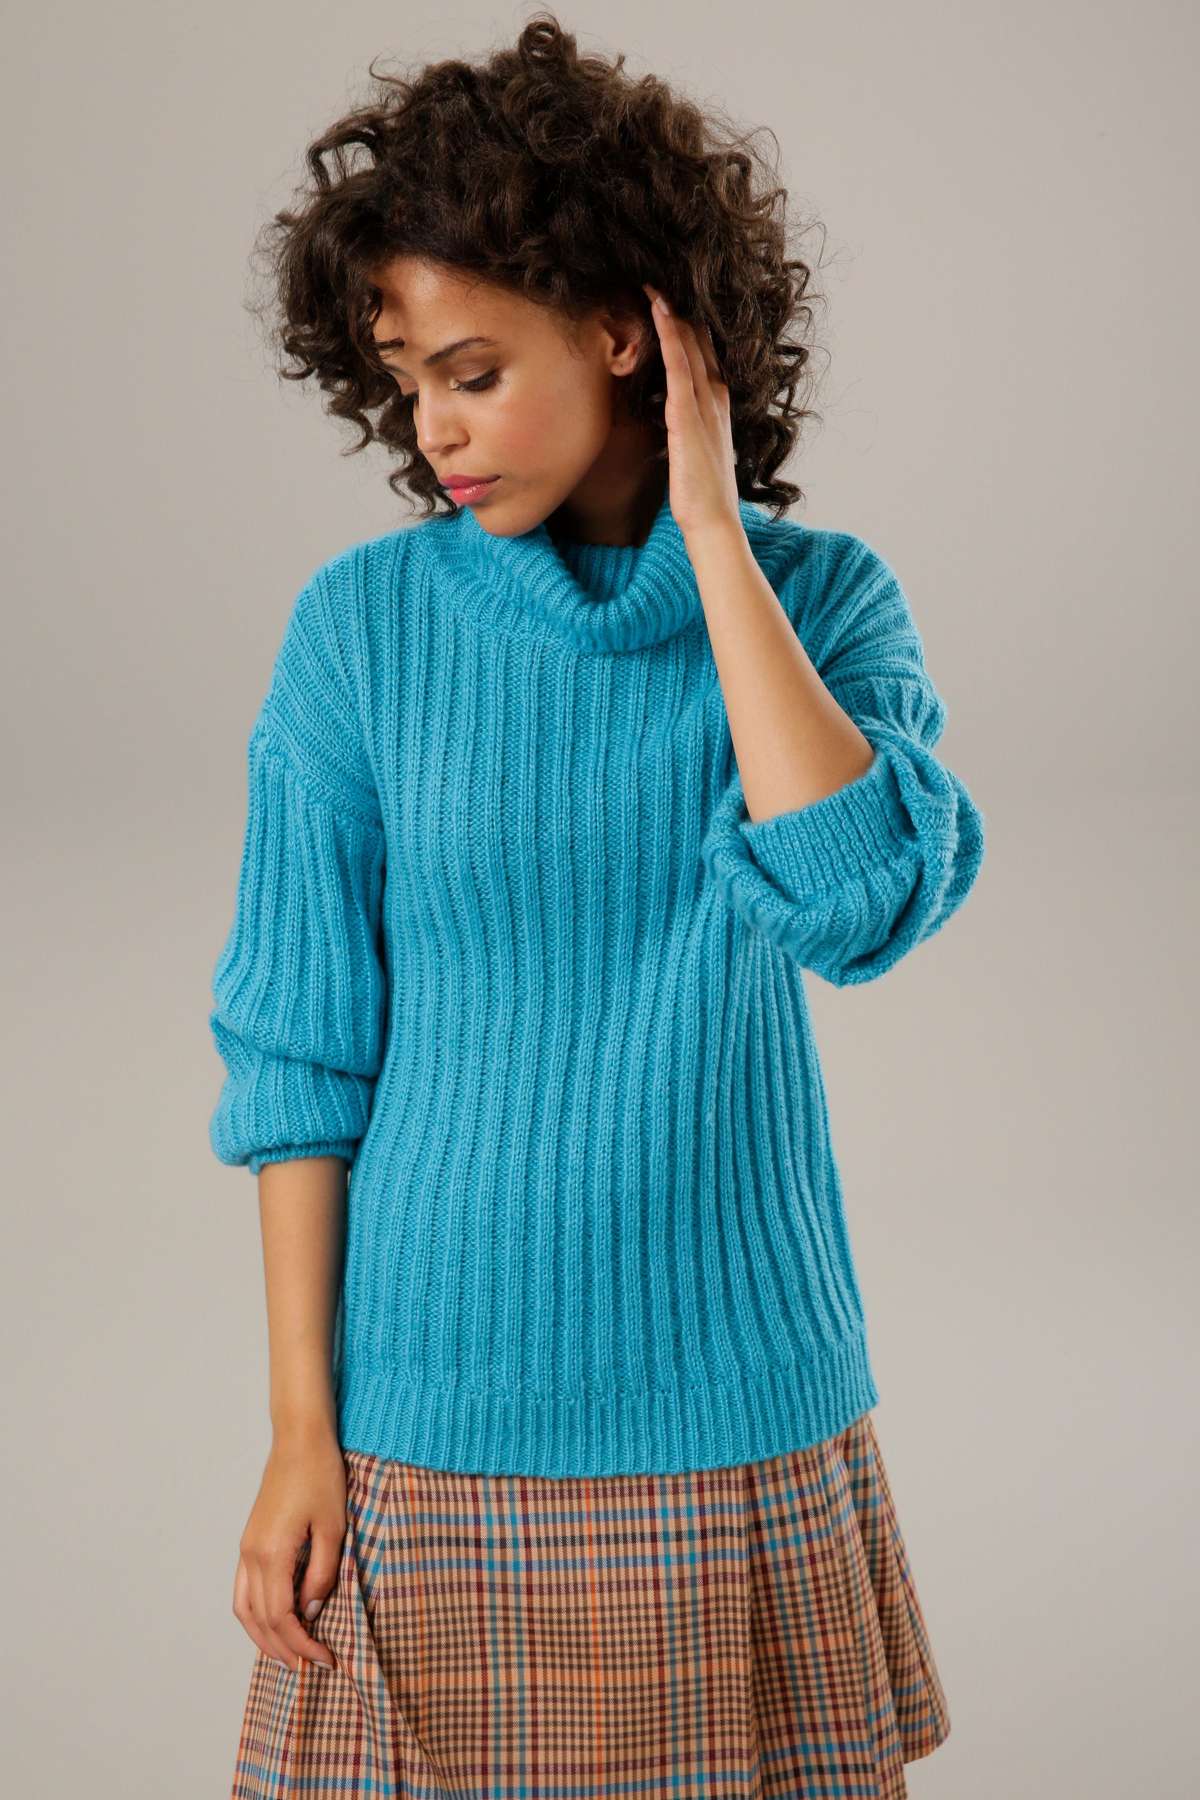 Вязаный свитер с декоративной водолазкой.